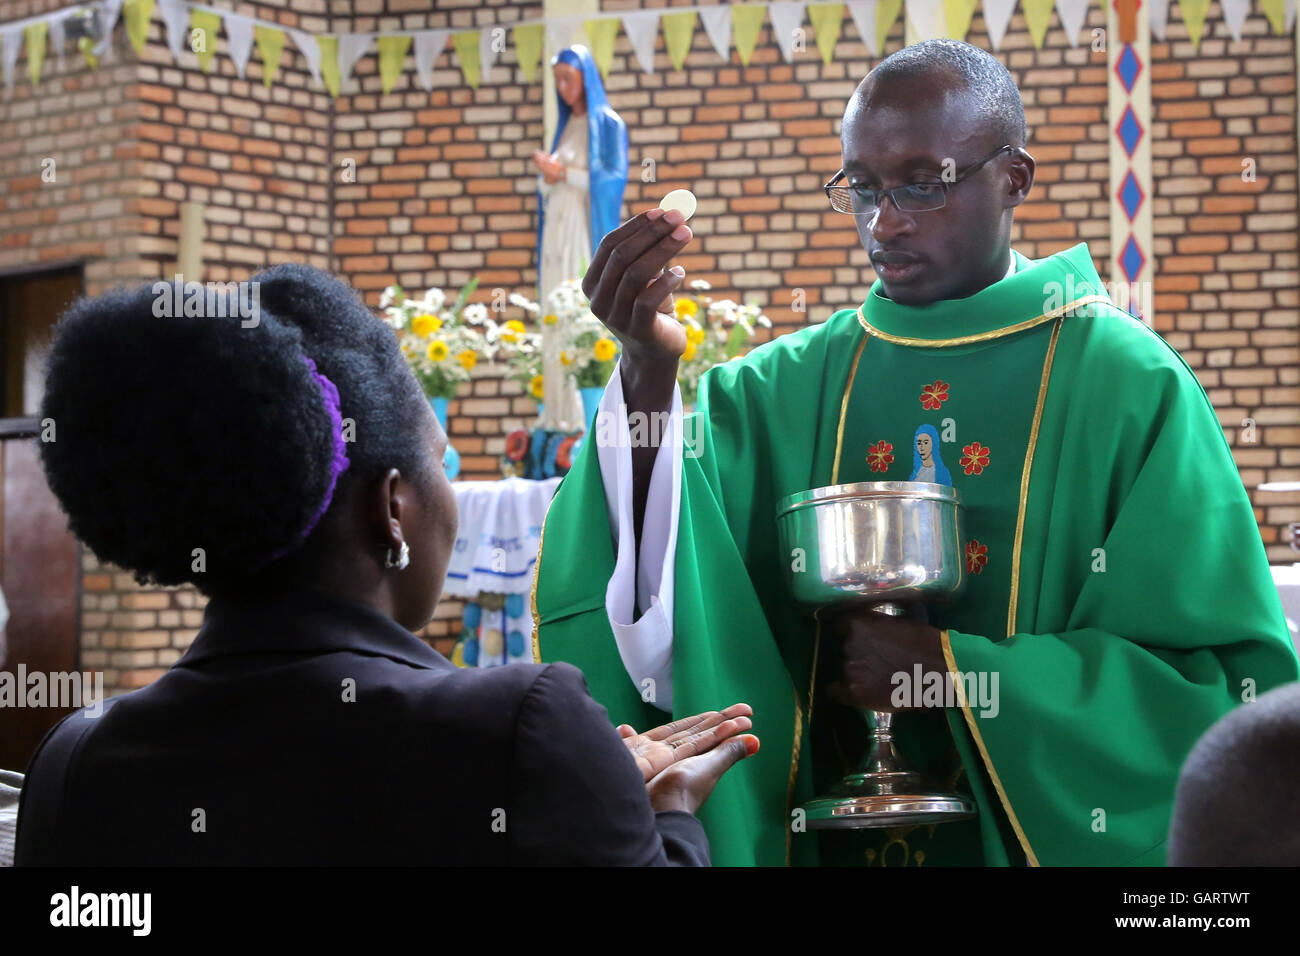 La messe du dimanche dans l'église de la ville de pèlerinage de Kibeho au Rwanda, l'Afrique. En 1981, la 'Vierge', mère de Jésus, a comparu pour la première fois à trois jeunes filles. Cela a été reconnu par le Vatican Eglise catholique en 2003, depuis lors, Kibeho est considéré comme le 'Lourdes de l'Afrique". Banque D'Images